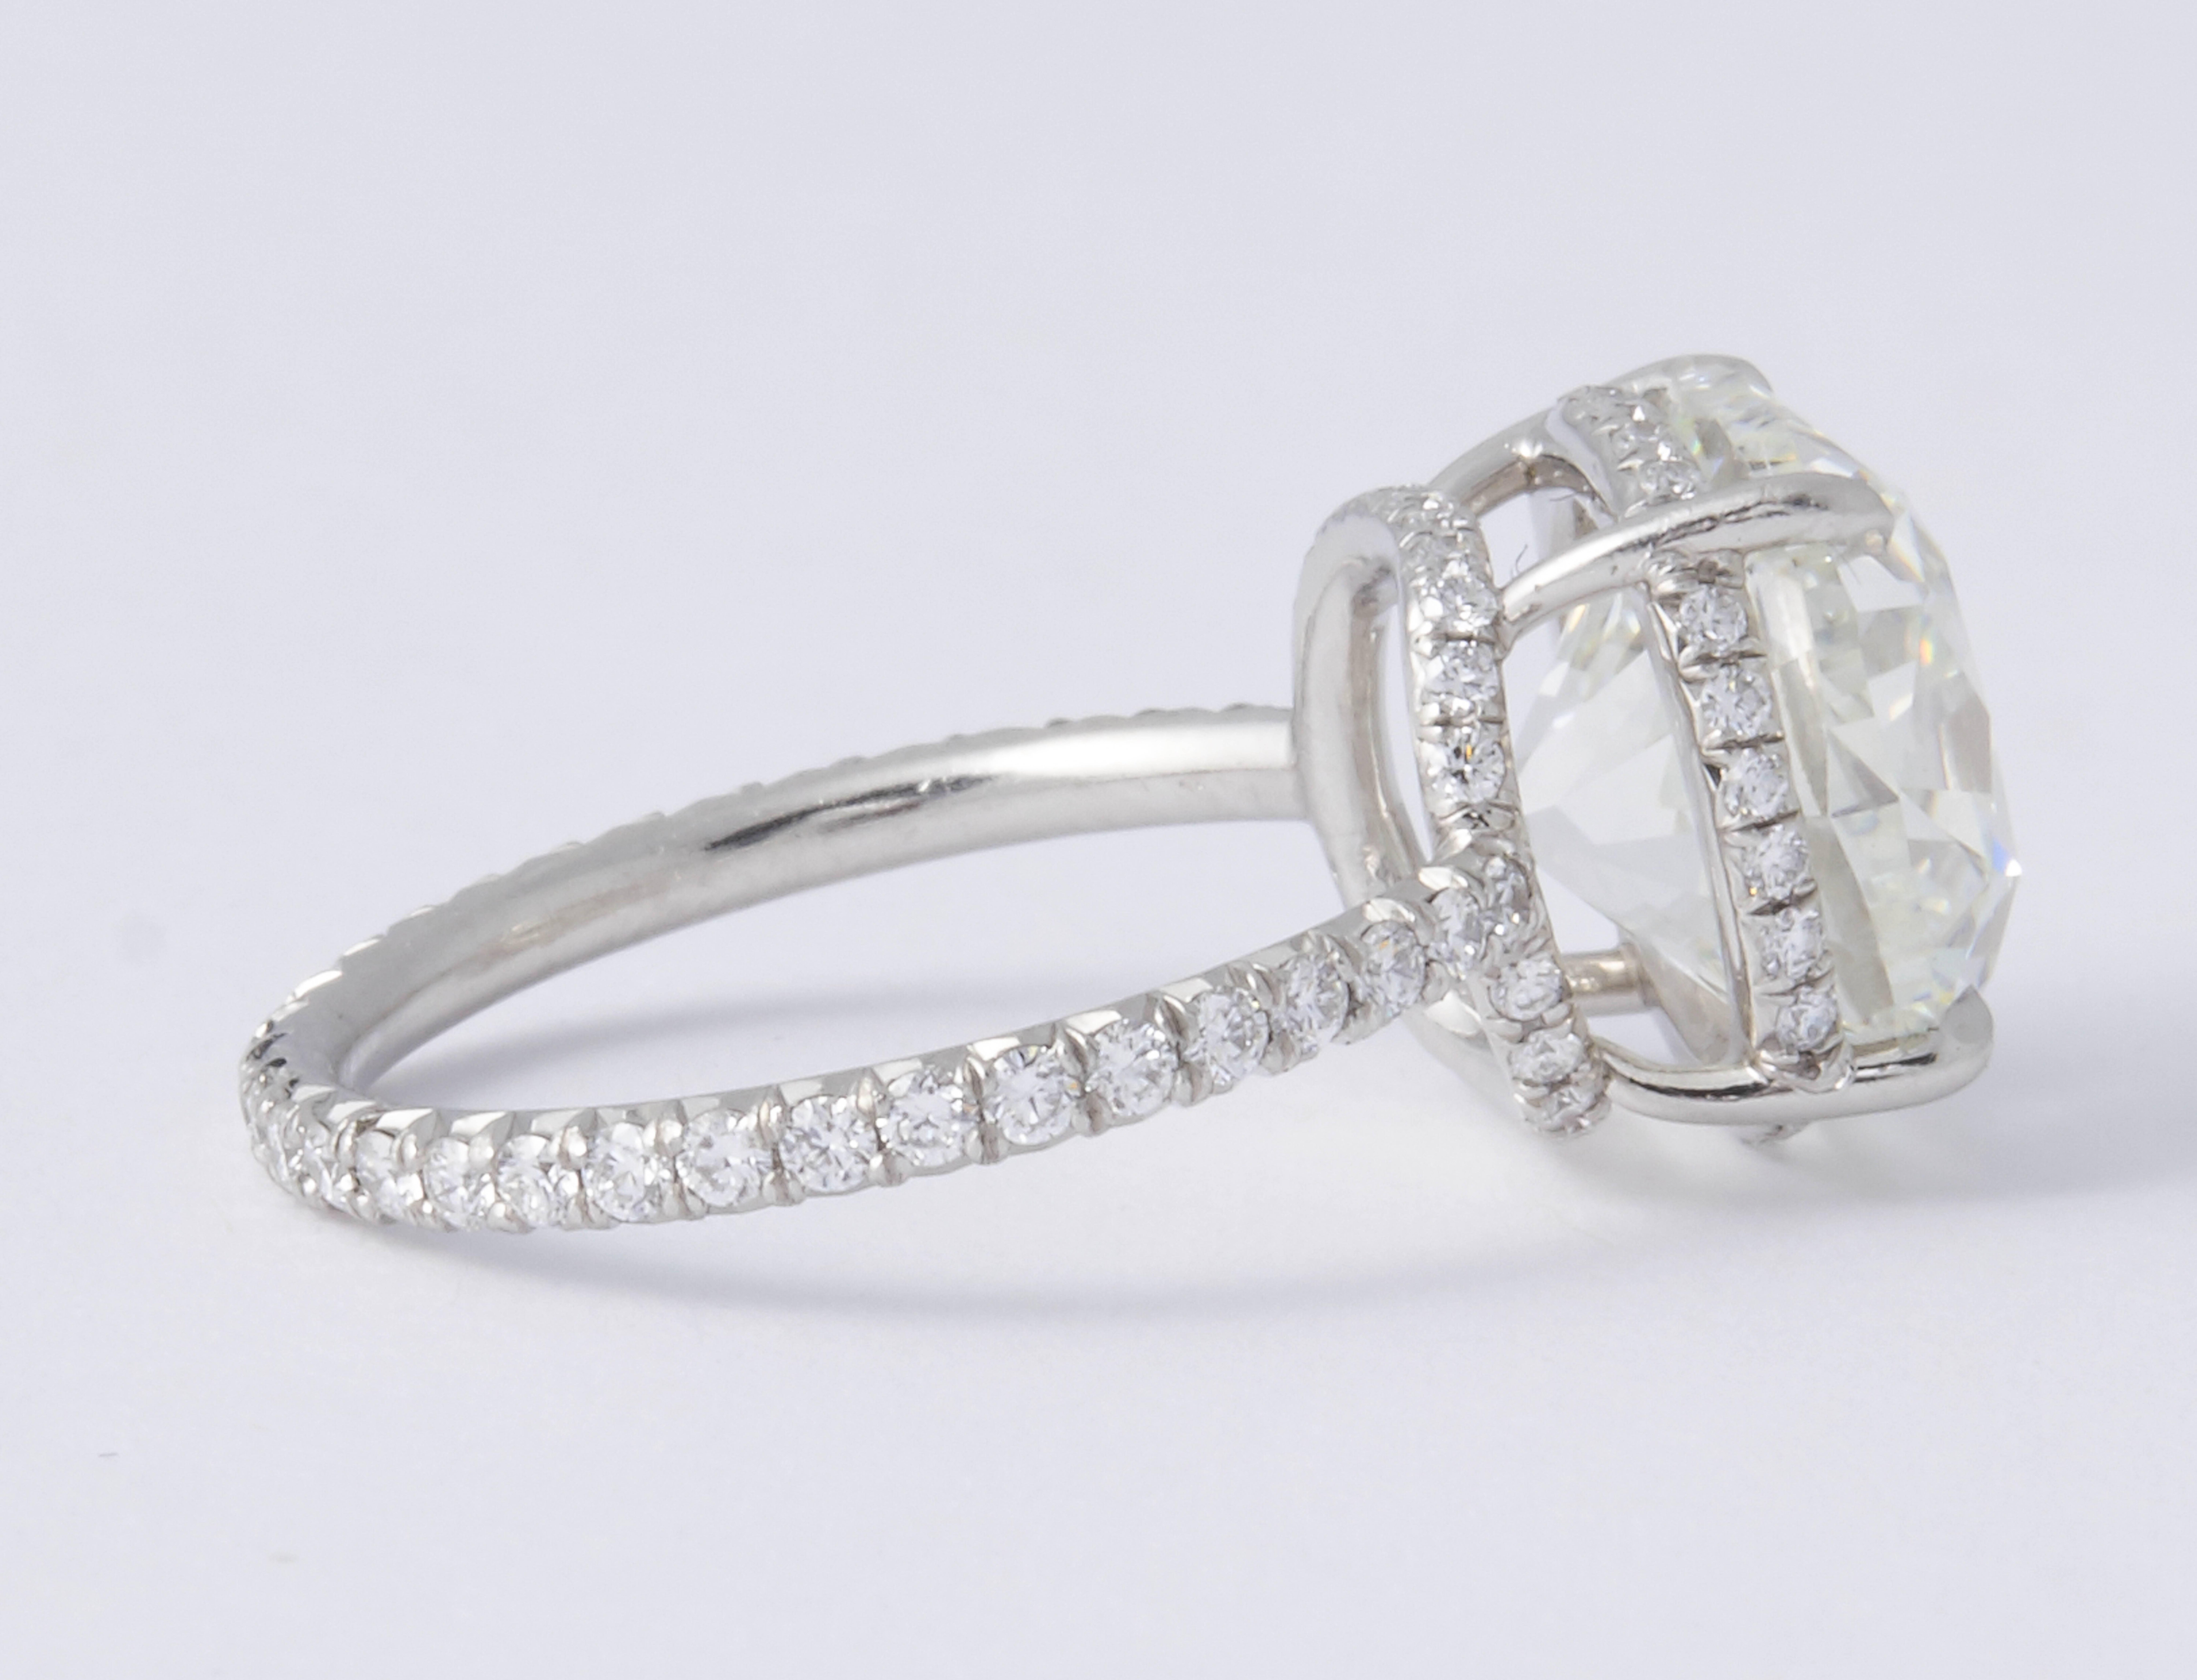 5 carat brilliant cut diamond ring